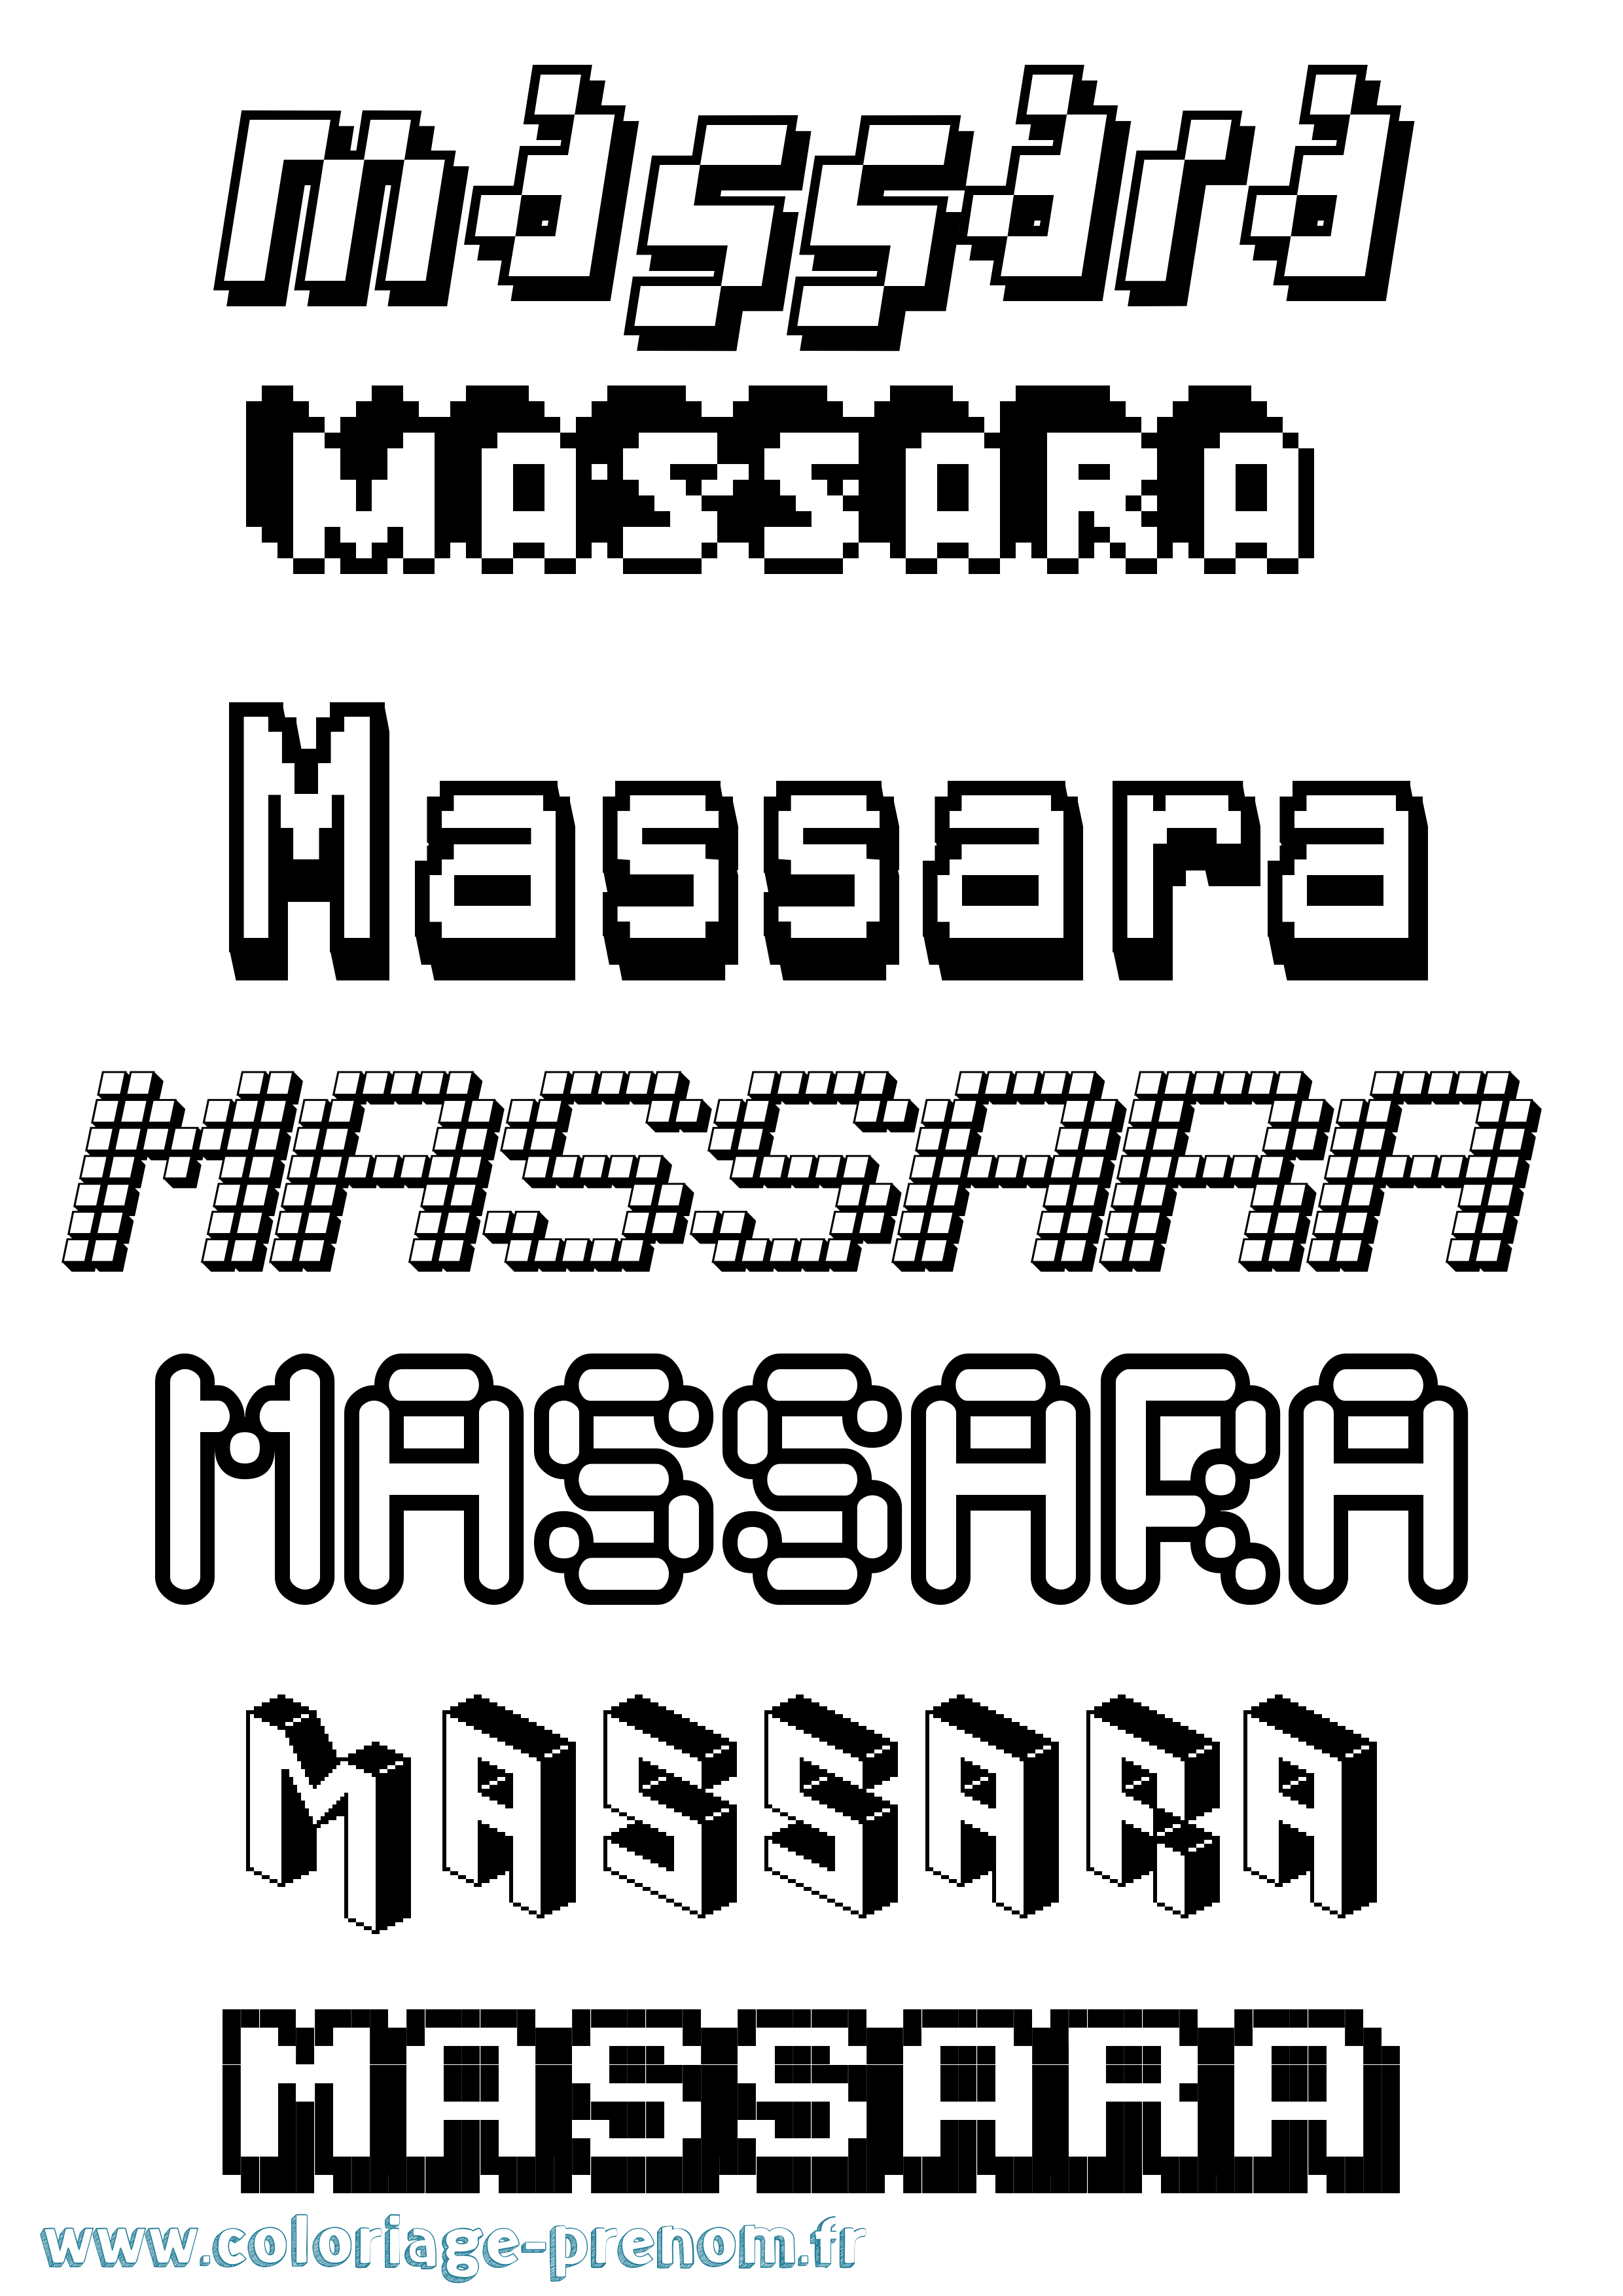 Coloriage prénom Massara Pixel